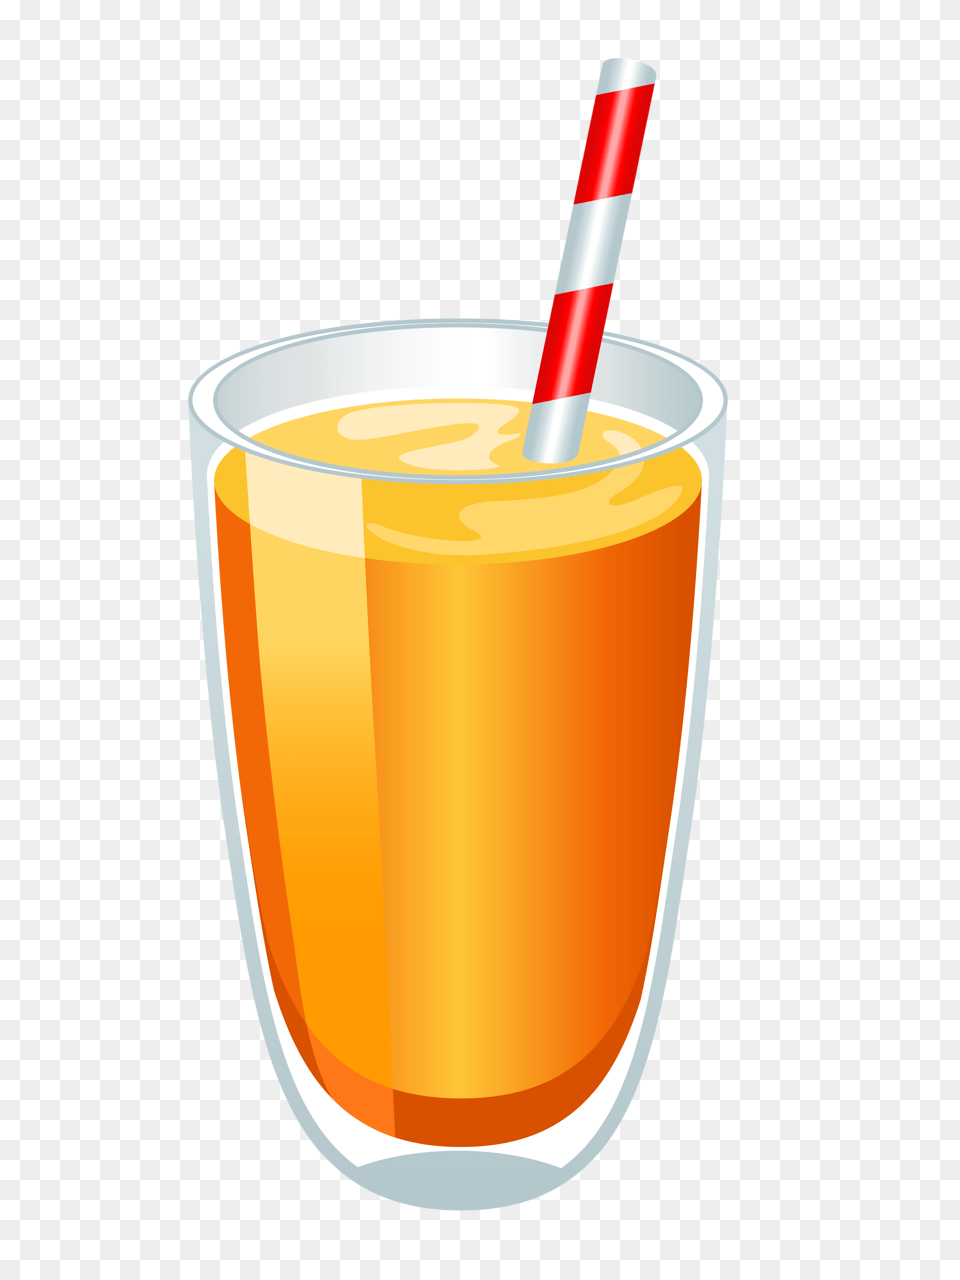 Super Bowl Logo Image, Beverage, Juice, Smoothie, Orange Juice Free Png